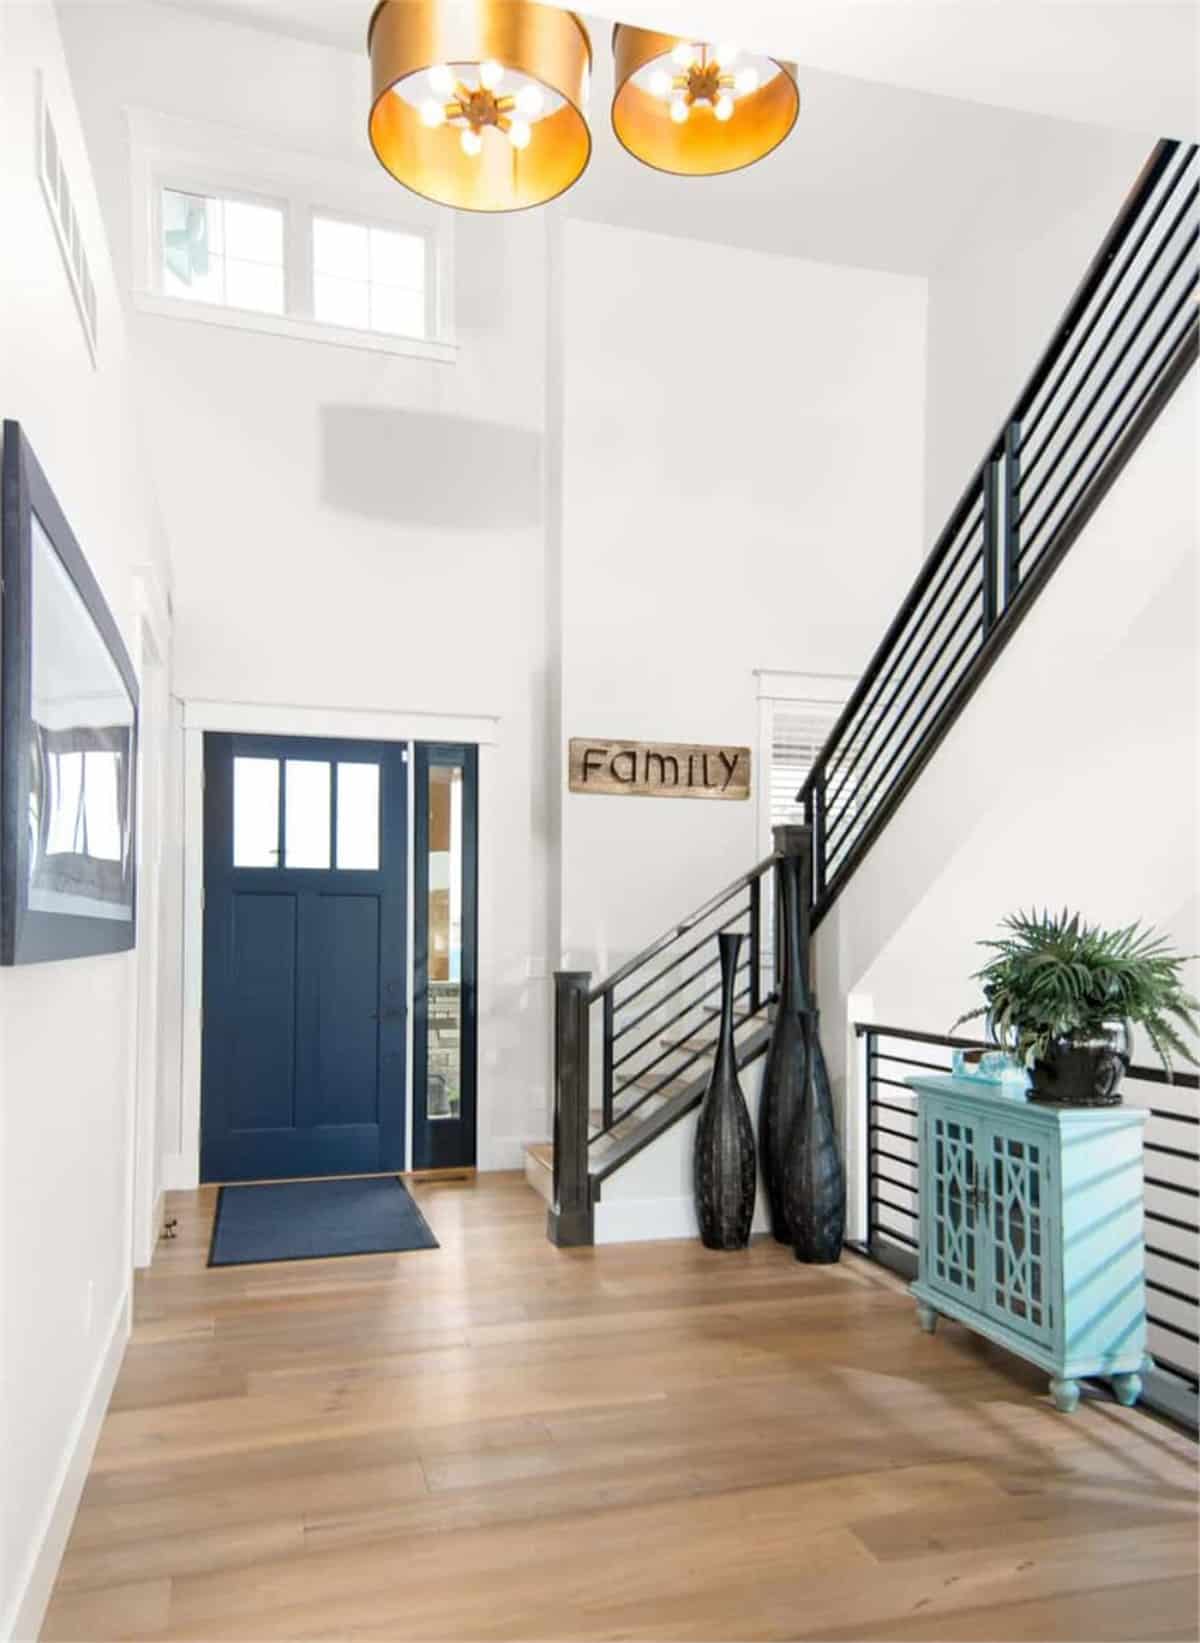 2层白色门厅与对比鲜明的黑色楼梯扶手